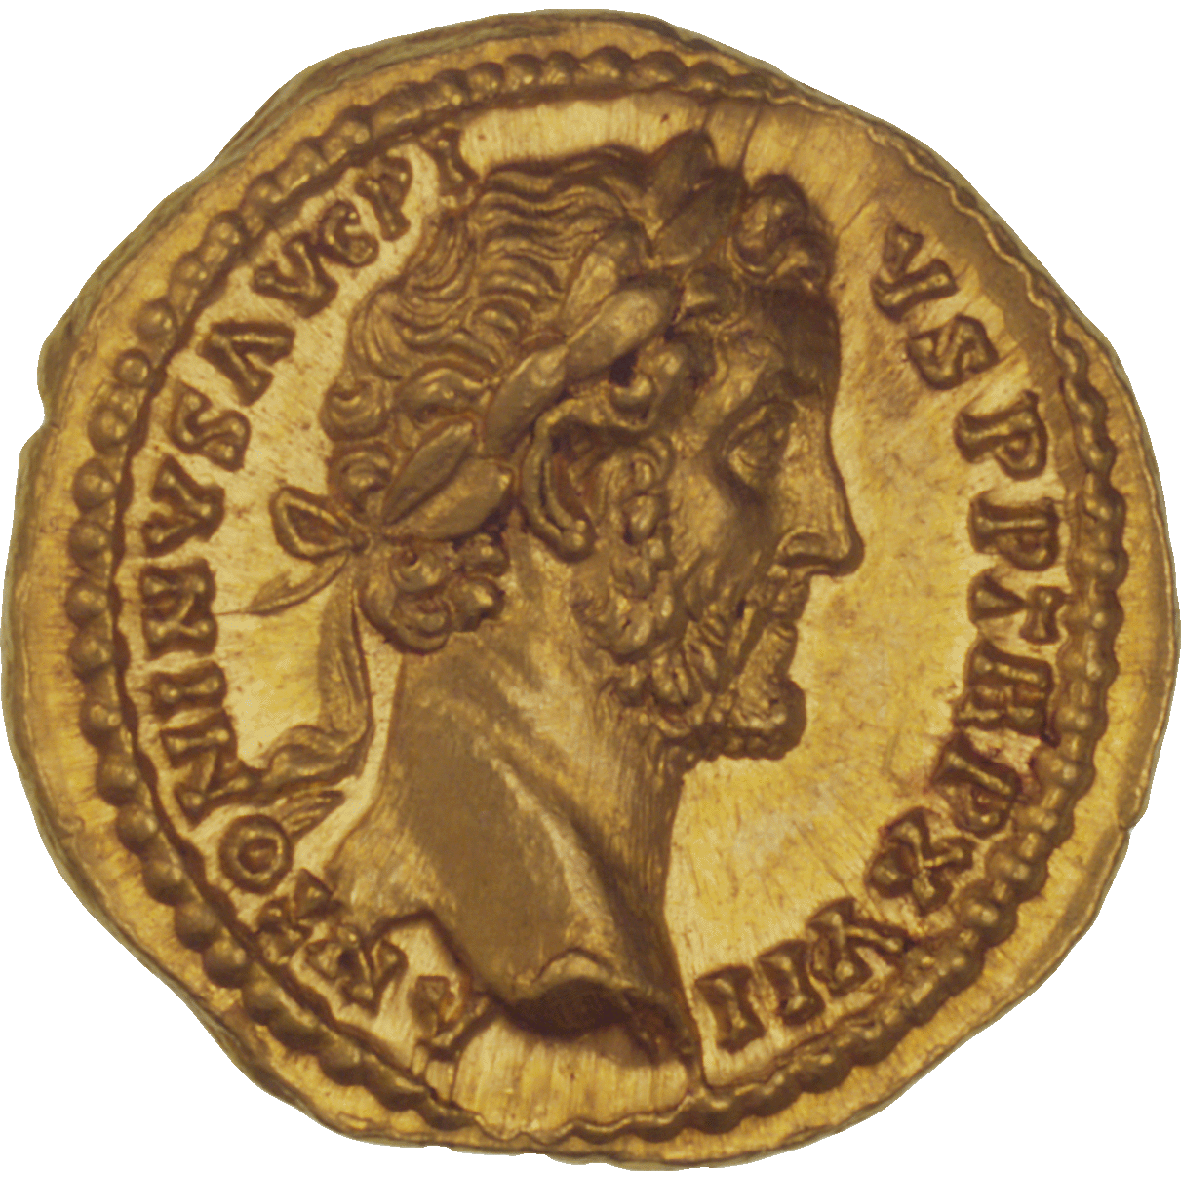 Römische Kaiserzeit, Antoninus Pius, Aureus (obverse)